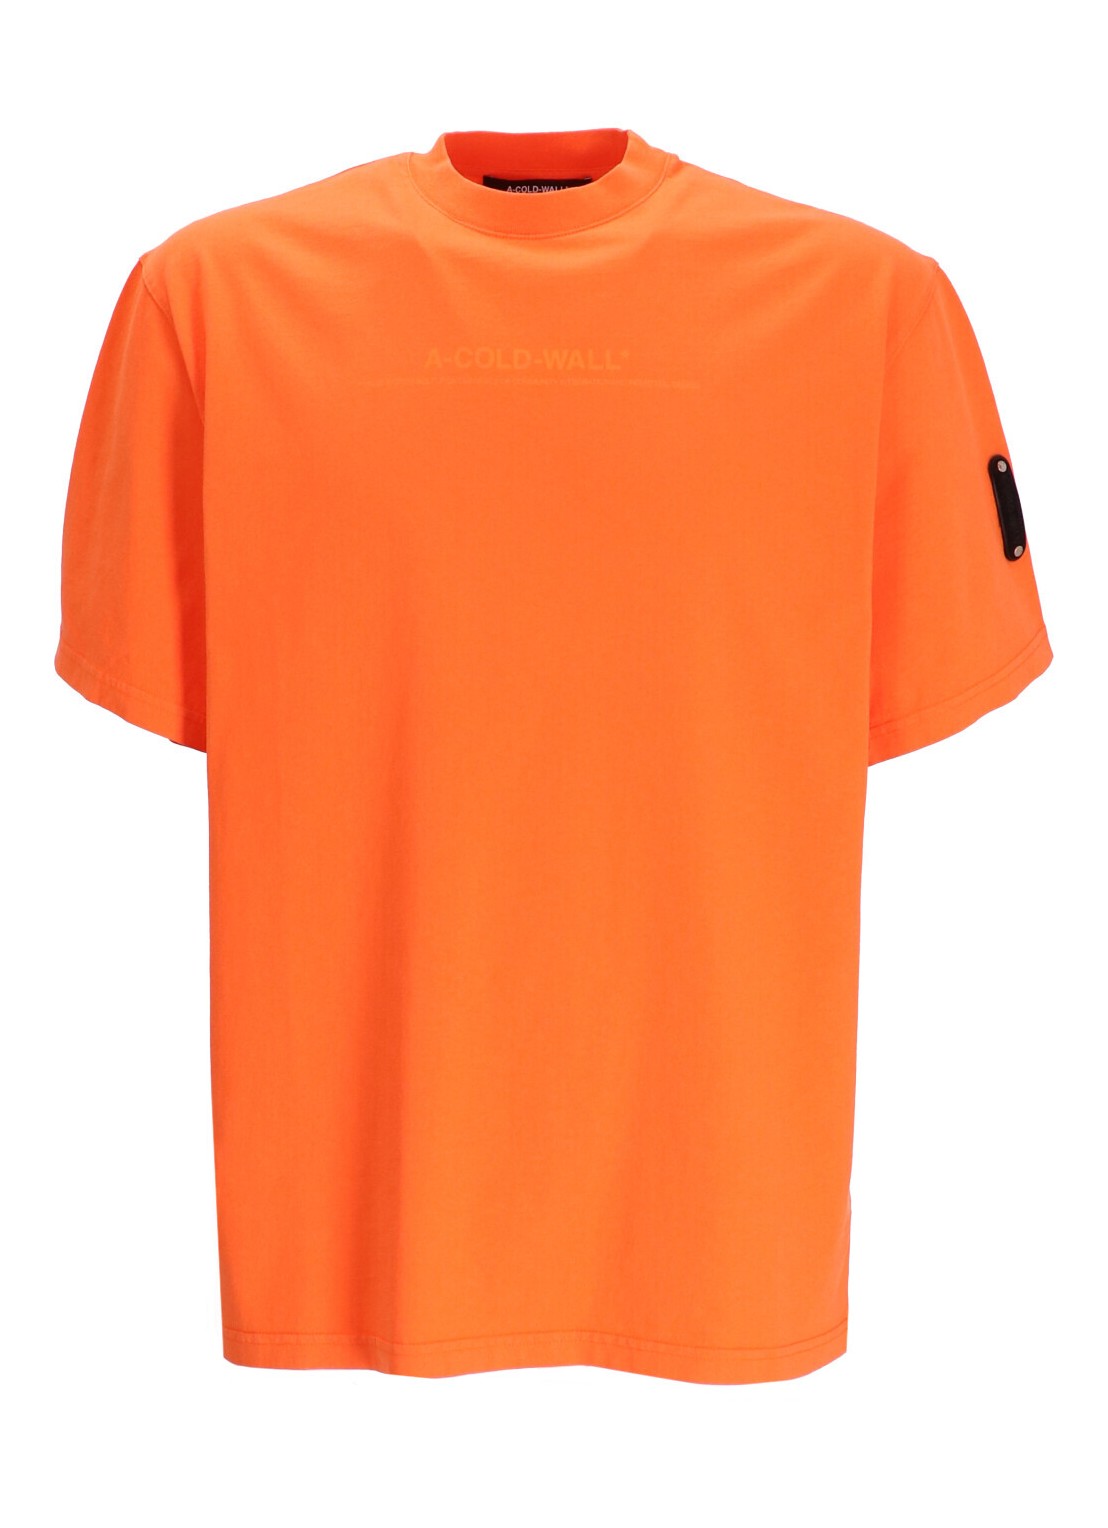 Camiseta a-cold-wall* t-shirt man discourse t-shirt acwmts187 rich orange richo talla S
 